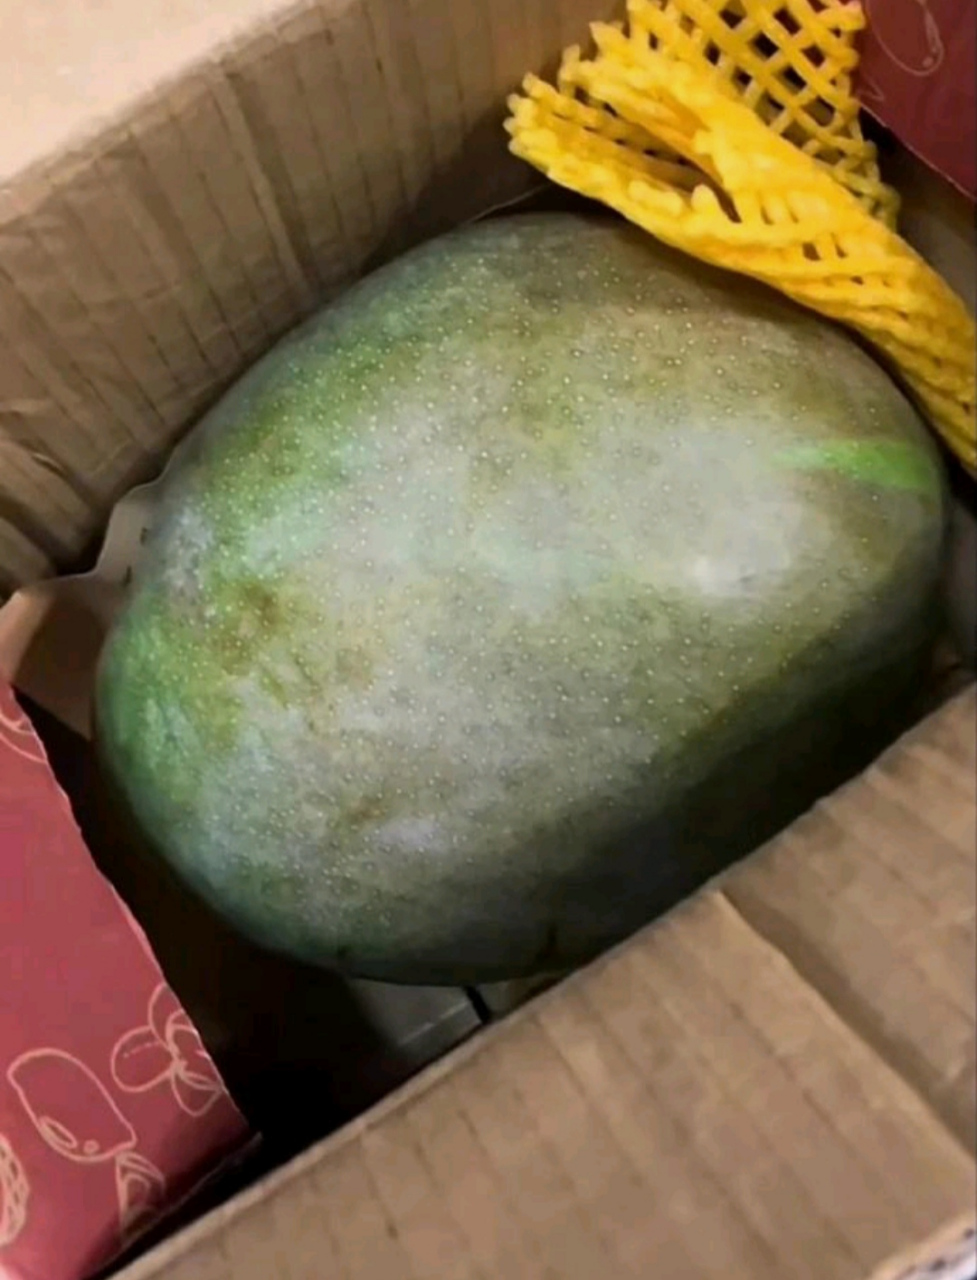 网上买了5斤芒果,商家发来…这是芒瓜吗?